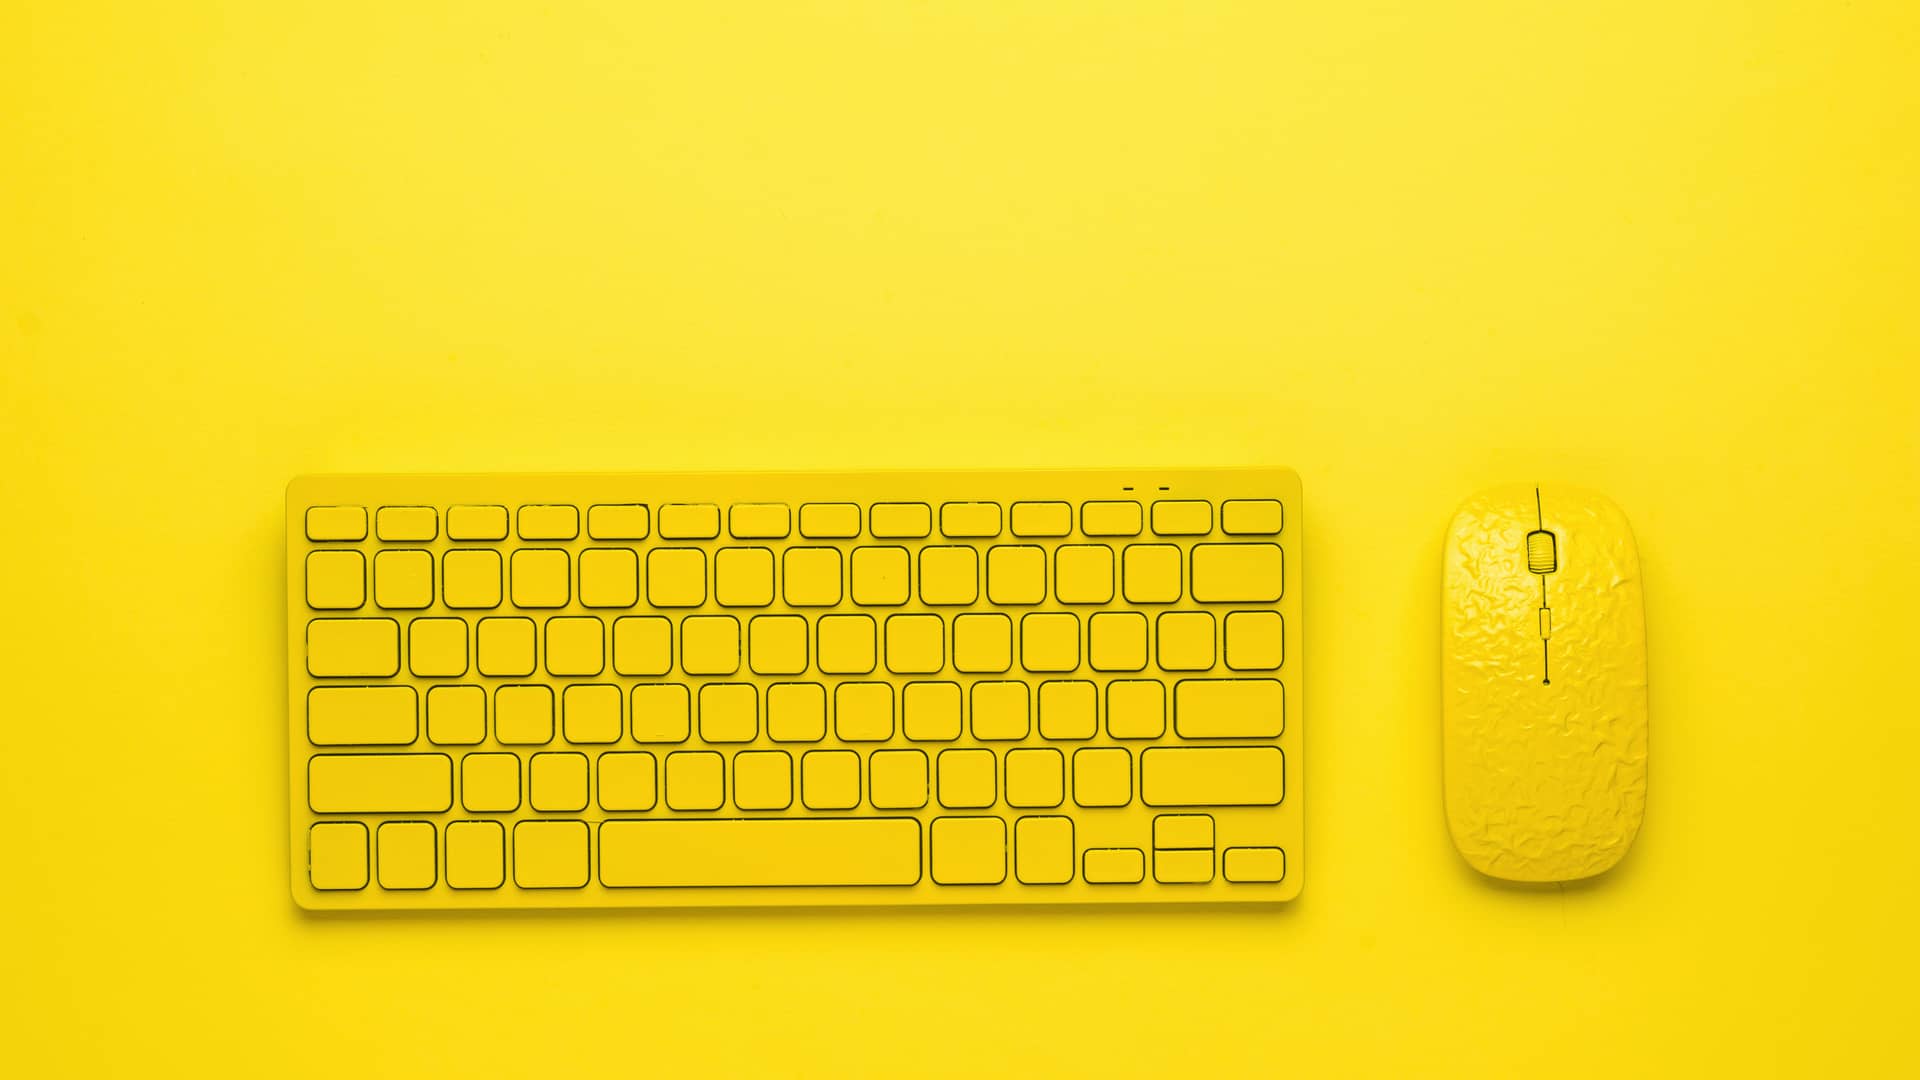 Teclado y ratón amarillos representan a los clientes que escriben en el foro de ayuda de jazztel